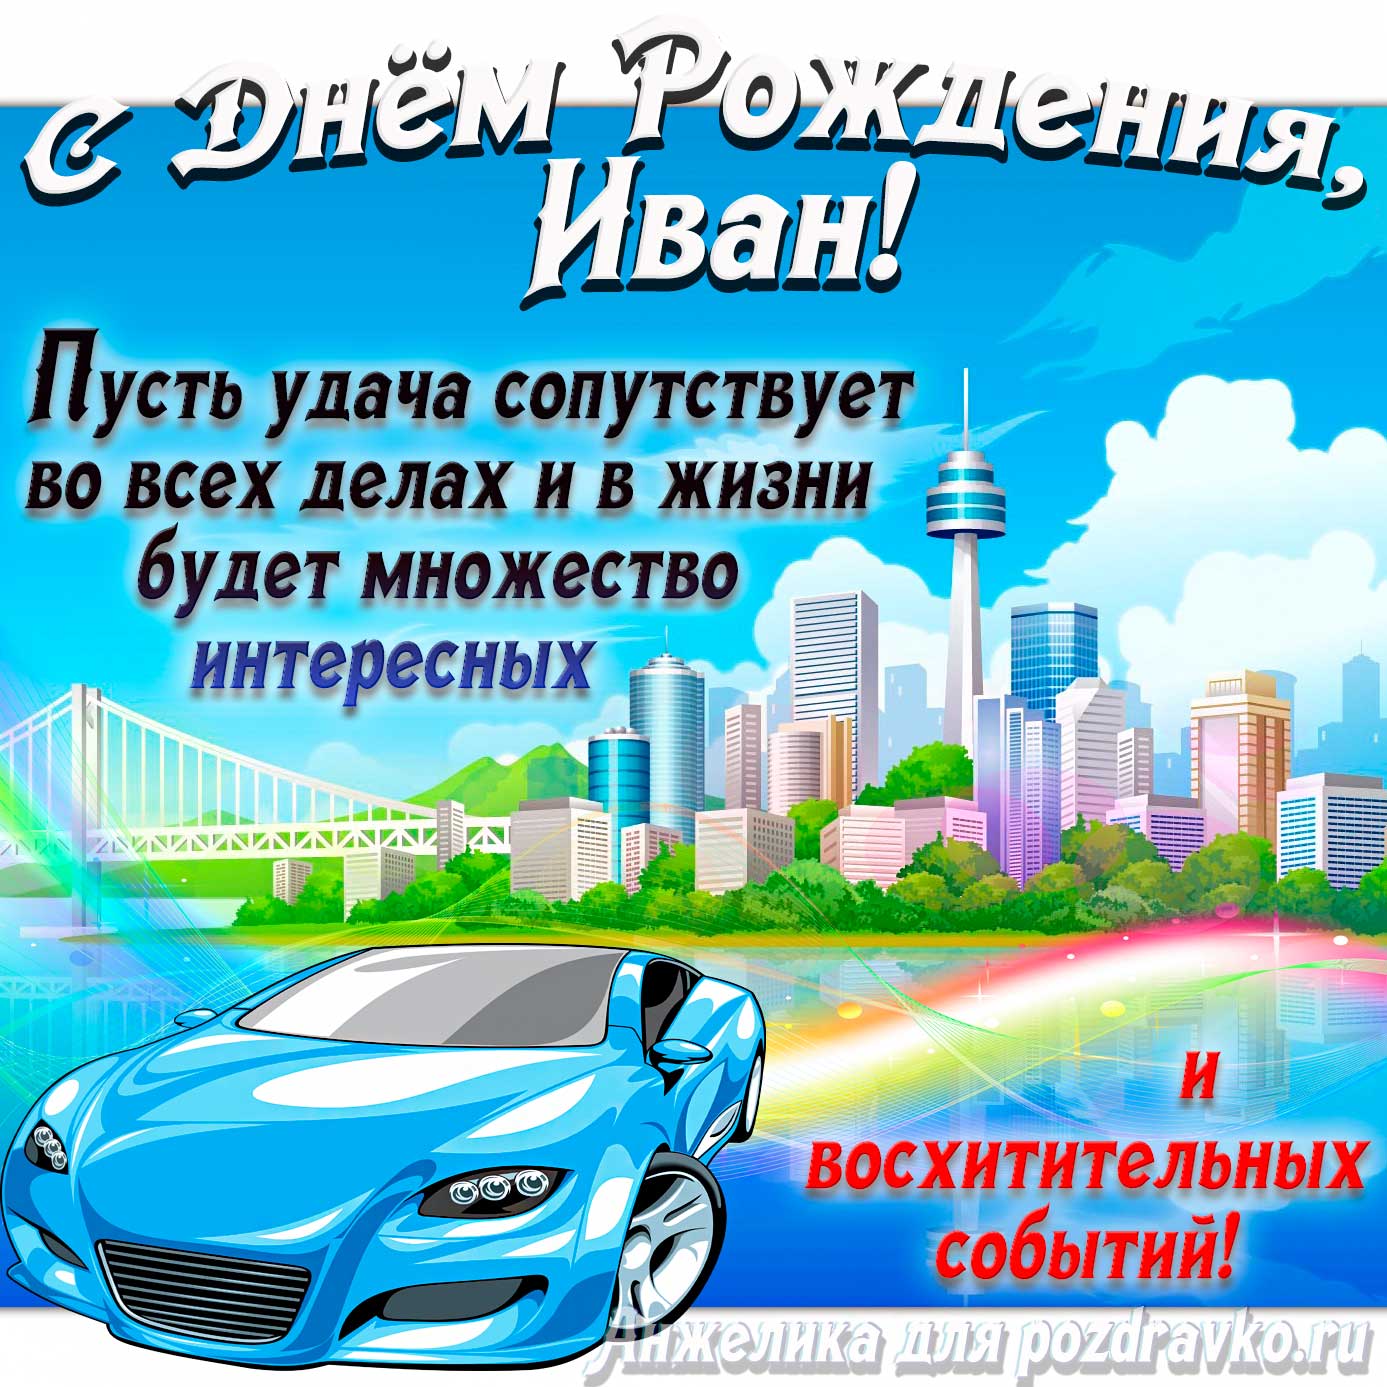 Открытка - с Днём Рождения Иван с голубой машиной и пожеланием. Скачать бесплатно или отправить картинку.